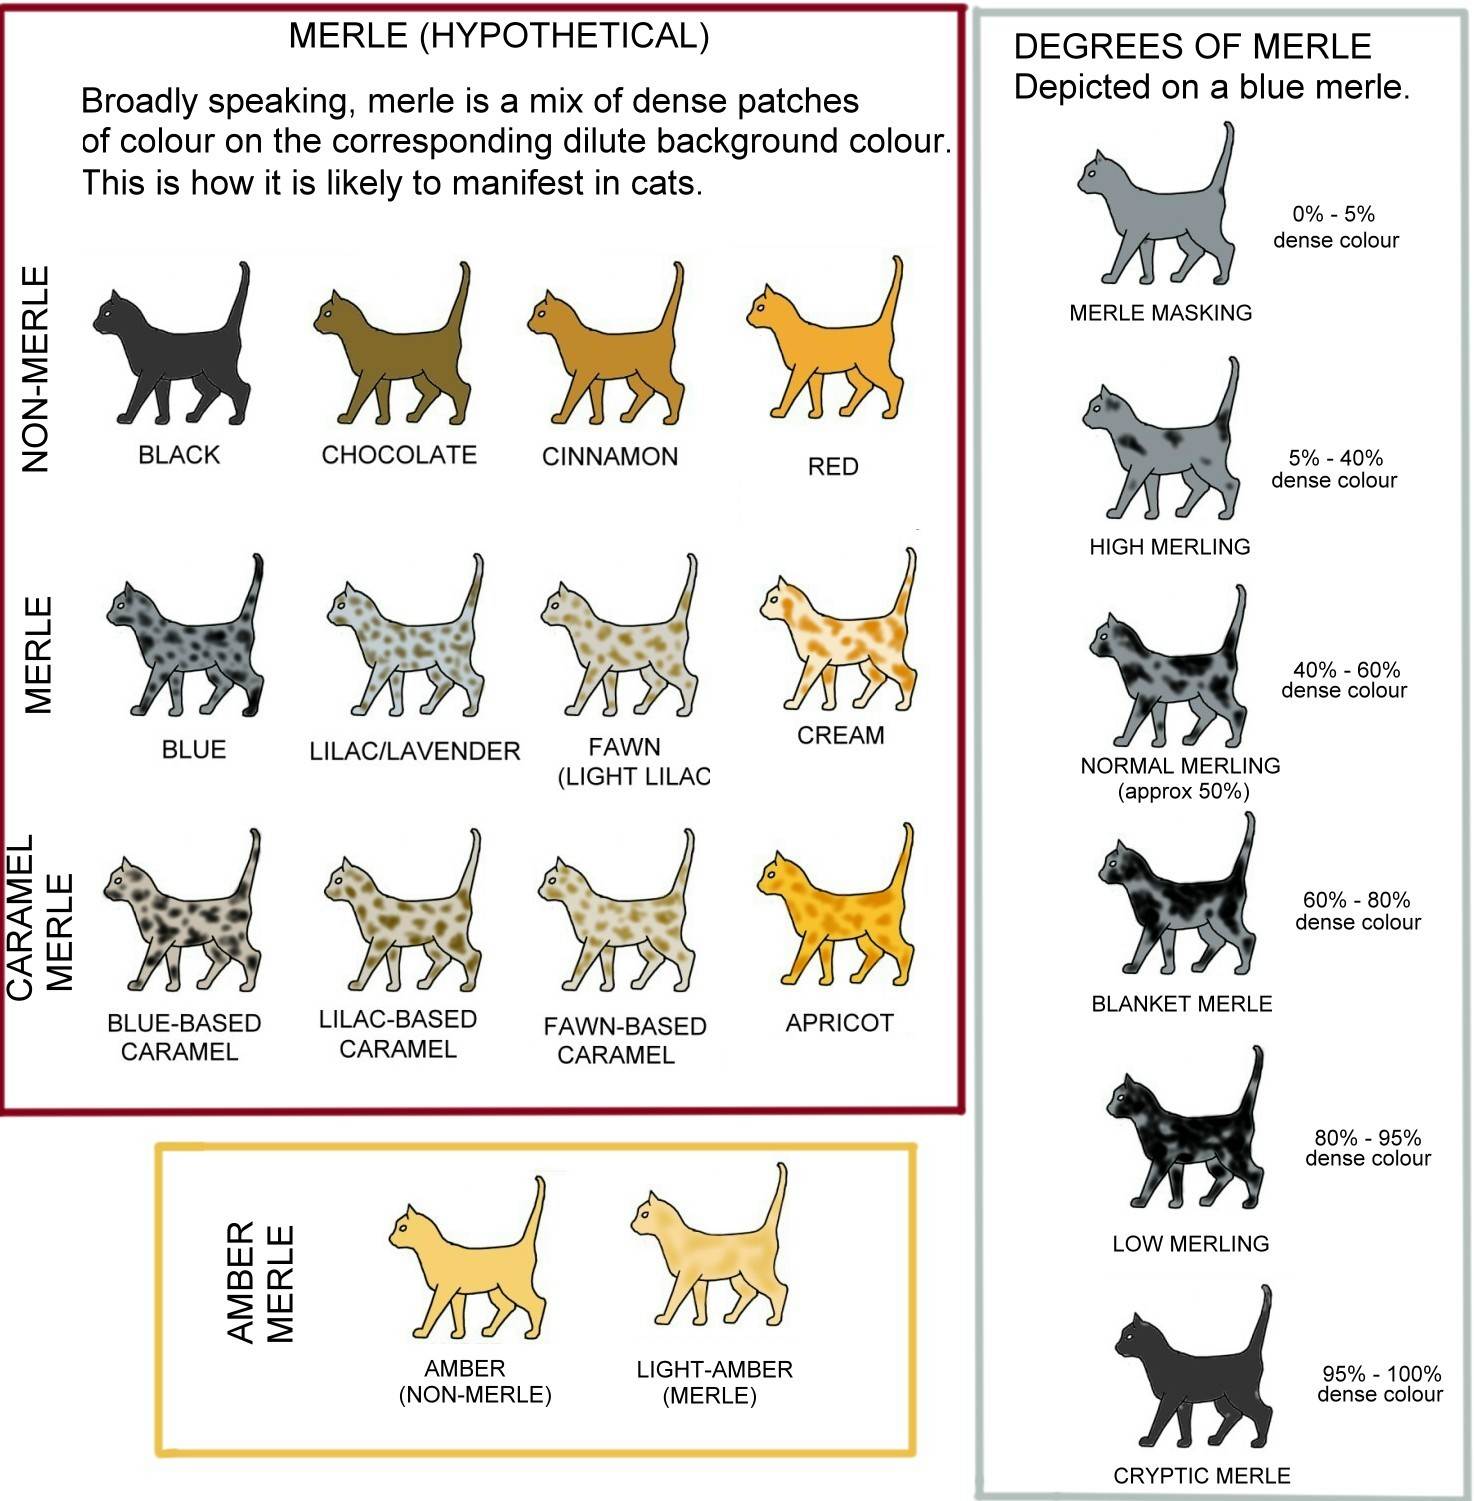 Окрас кошки: почему шерсть питомцев имеет разный цвет и рисунок, пятнистые и полосатые породы, черепаховые и мраморные коты, фото